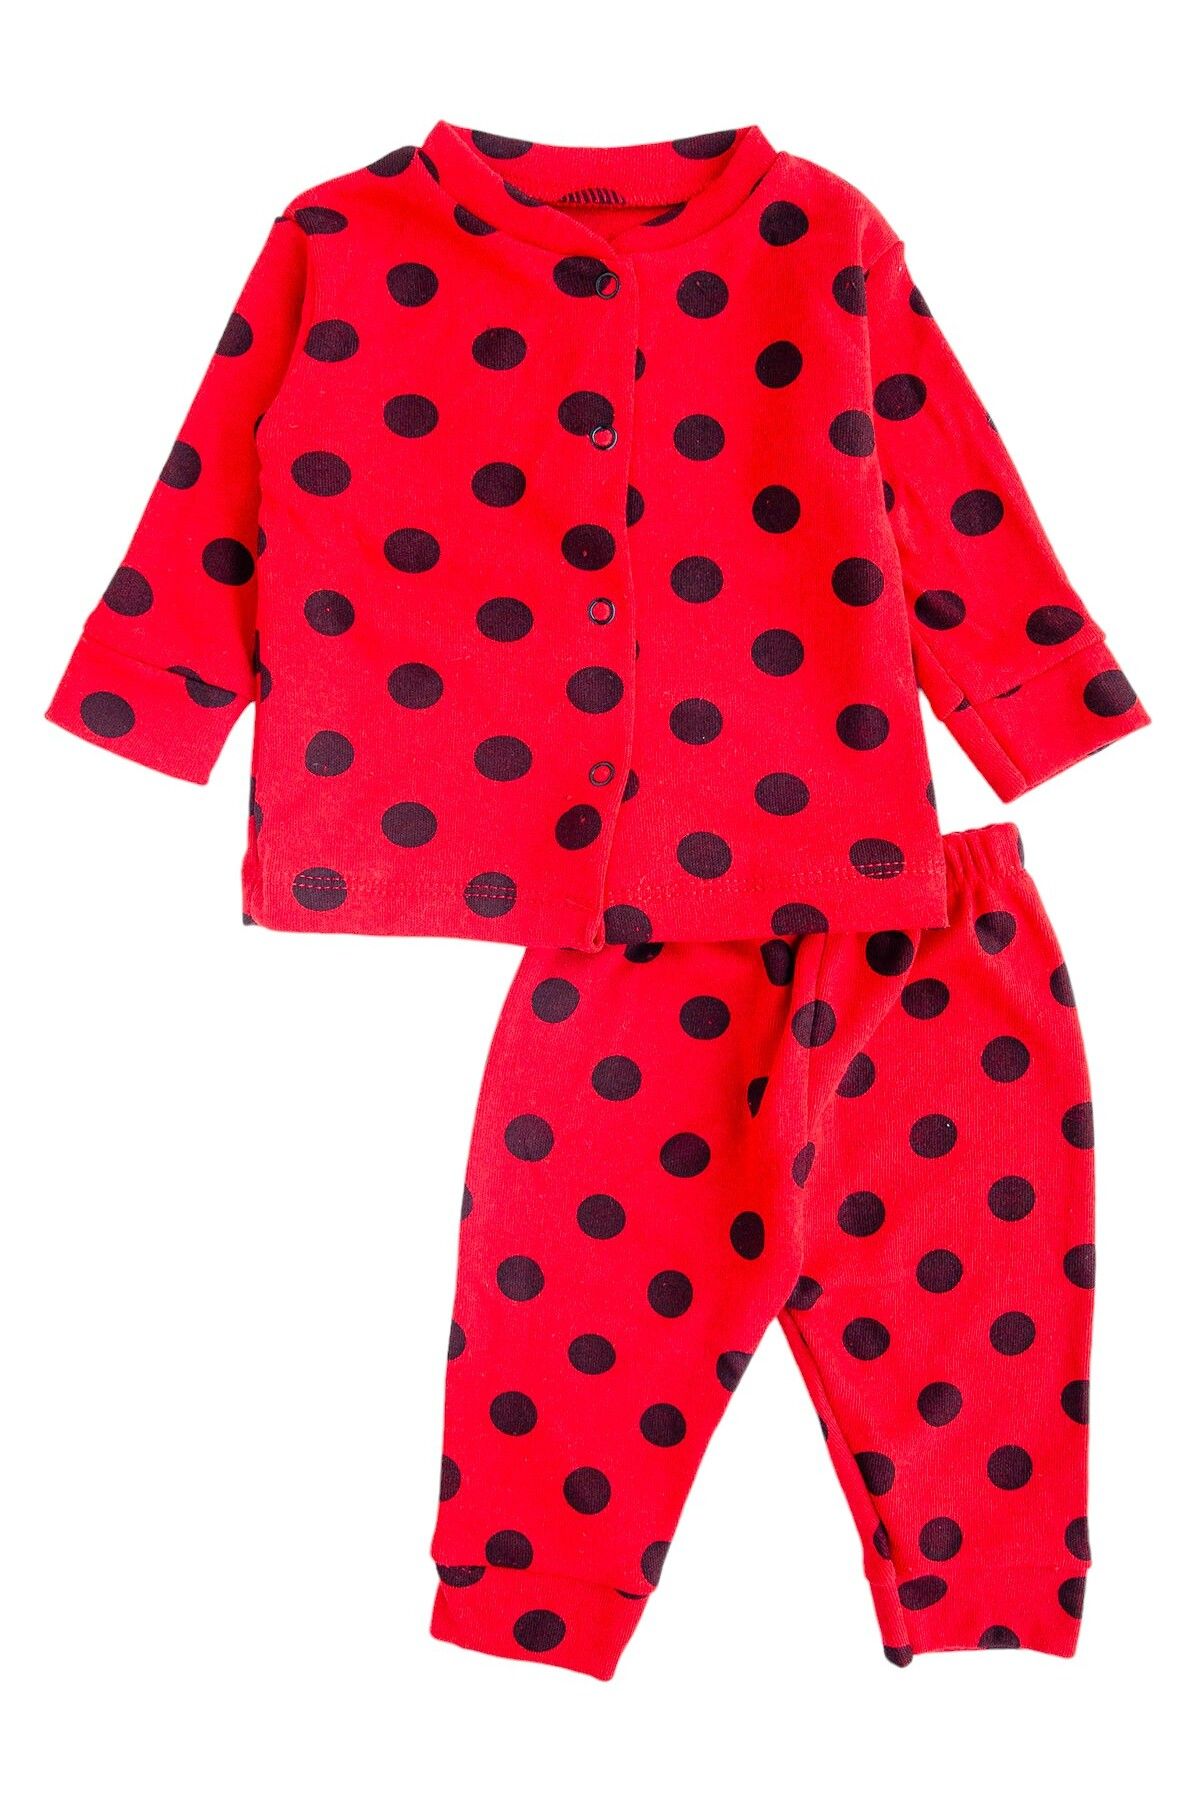 Oz Baby Desenli Pamuklu Bebek Pijama Takım - Kız ve Erkek Bebek Takımları